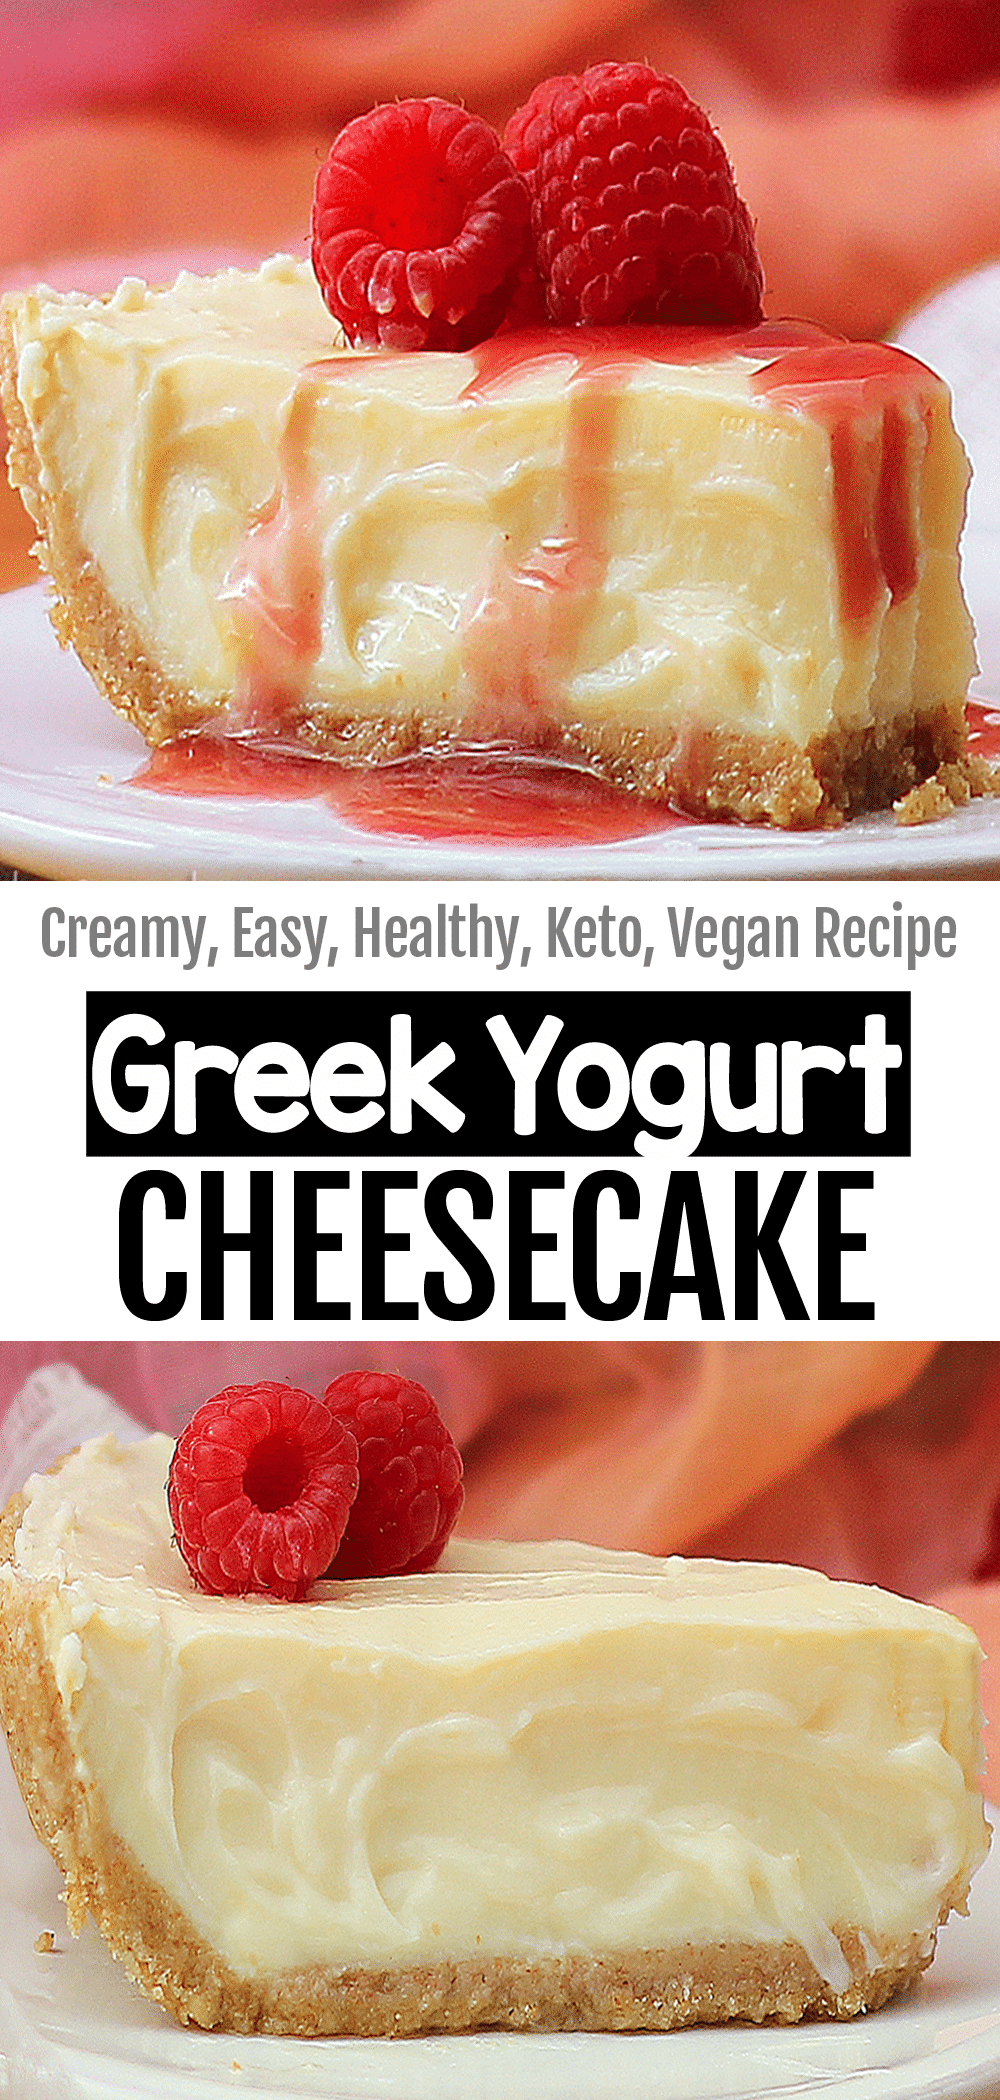 Greek Yogurt Cheesecake - Chocolate Covered Katie